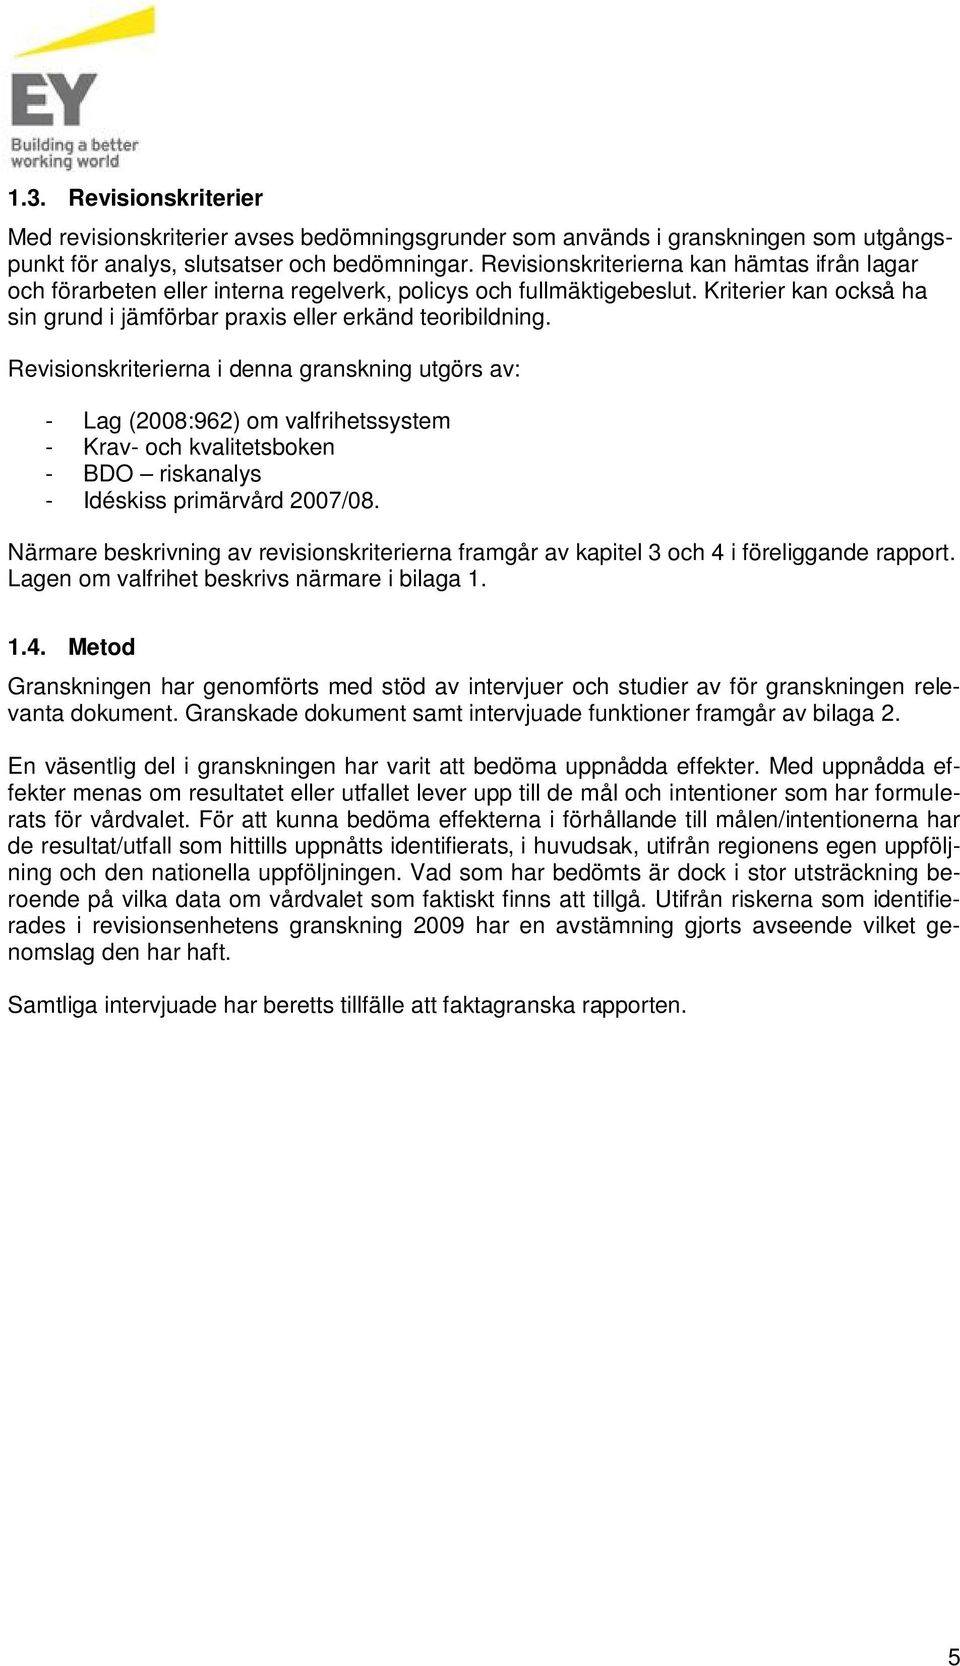 Revisionskriterierna i denna granskning utgörs av: - Lag (2008:962) om valfrihetssystem - Krav- och kvalitetsboken - BDO riskanalys - Idéskiss primärvård 2007/08.